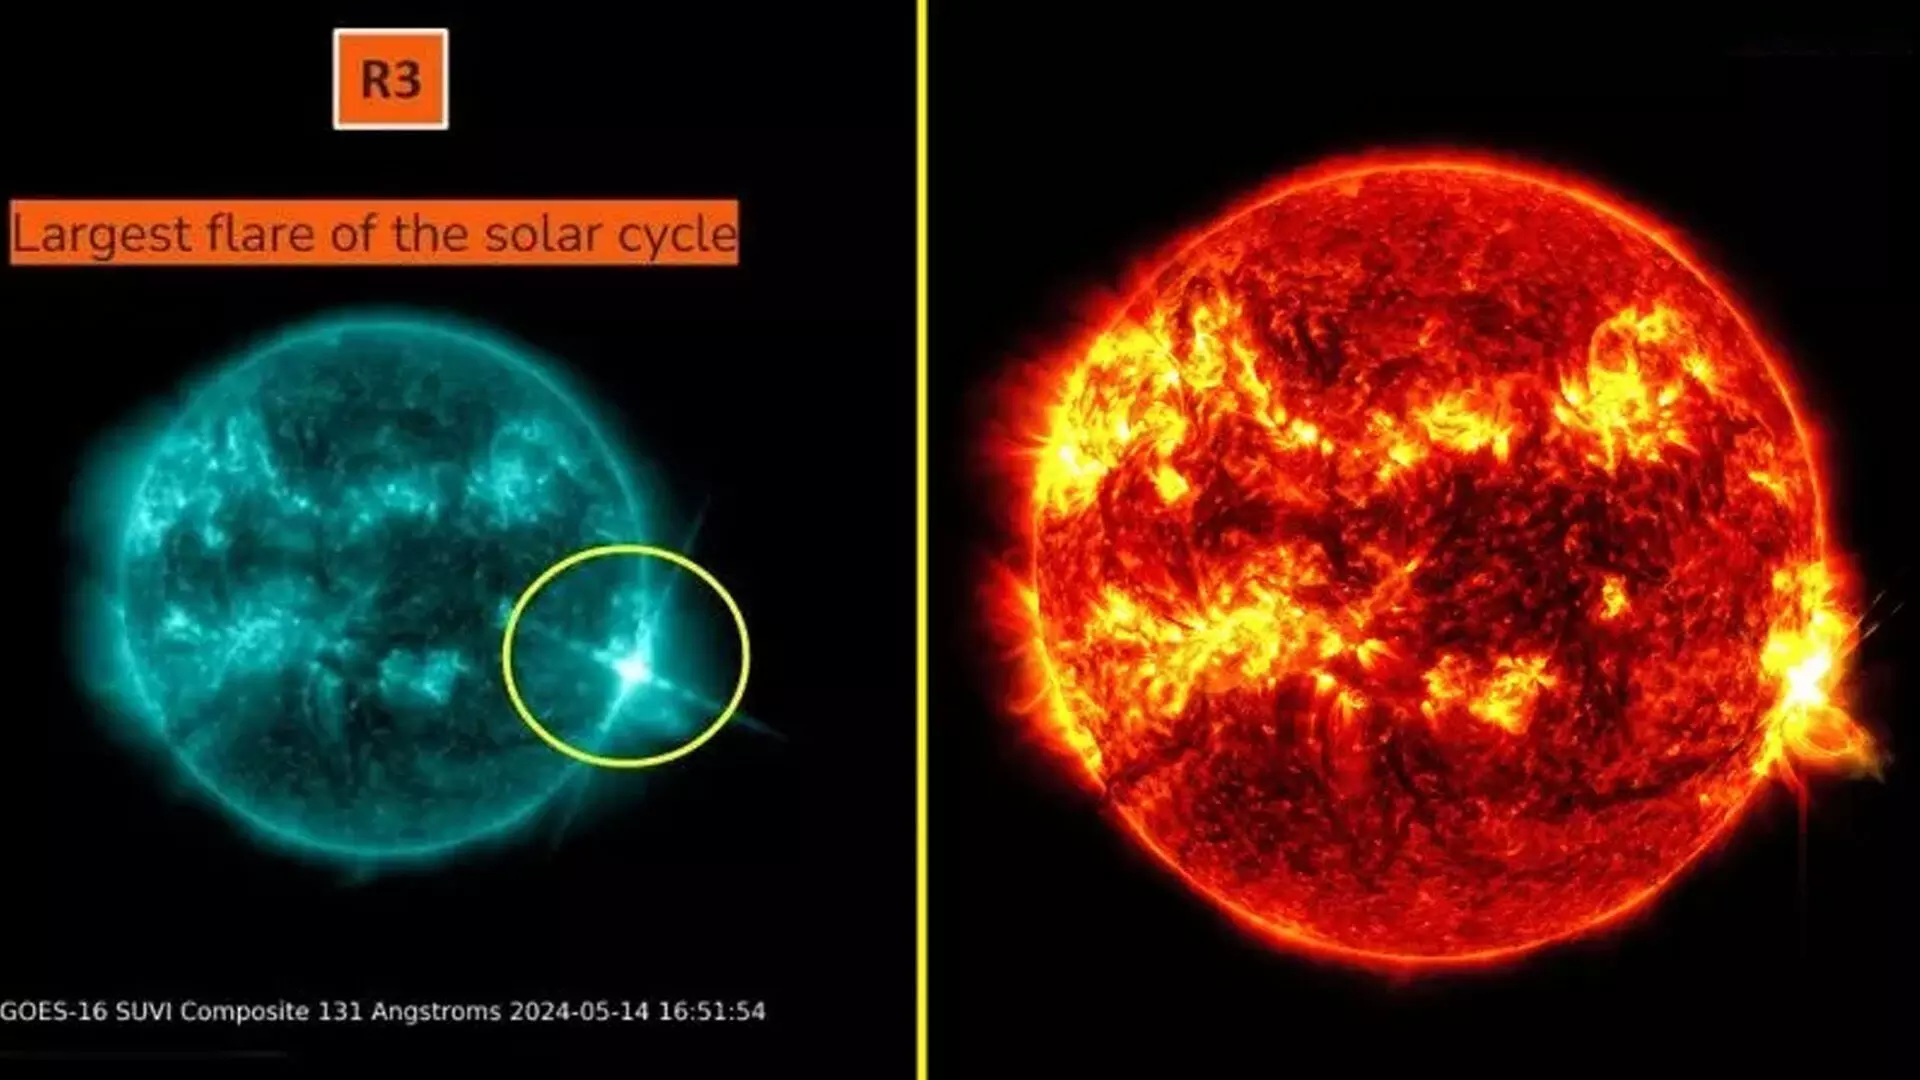 सूर्य ने जाइंट X8.7 श्रेणी के विस्फोट में वर्तमान चक्र की सबसे मजबूत सौर ज्वाला प्रक्षेपित की